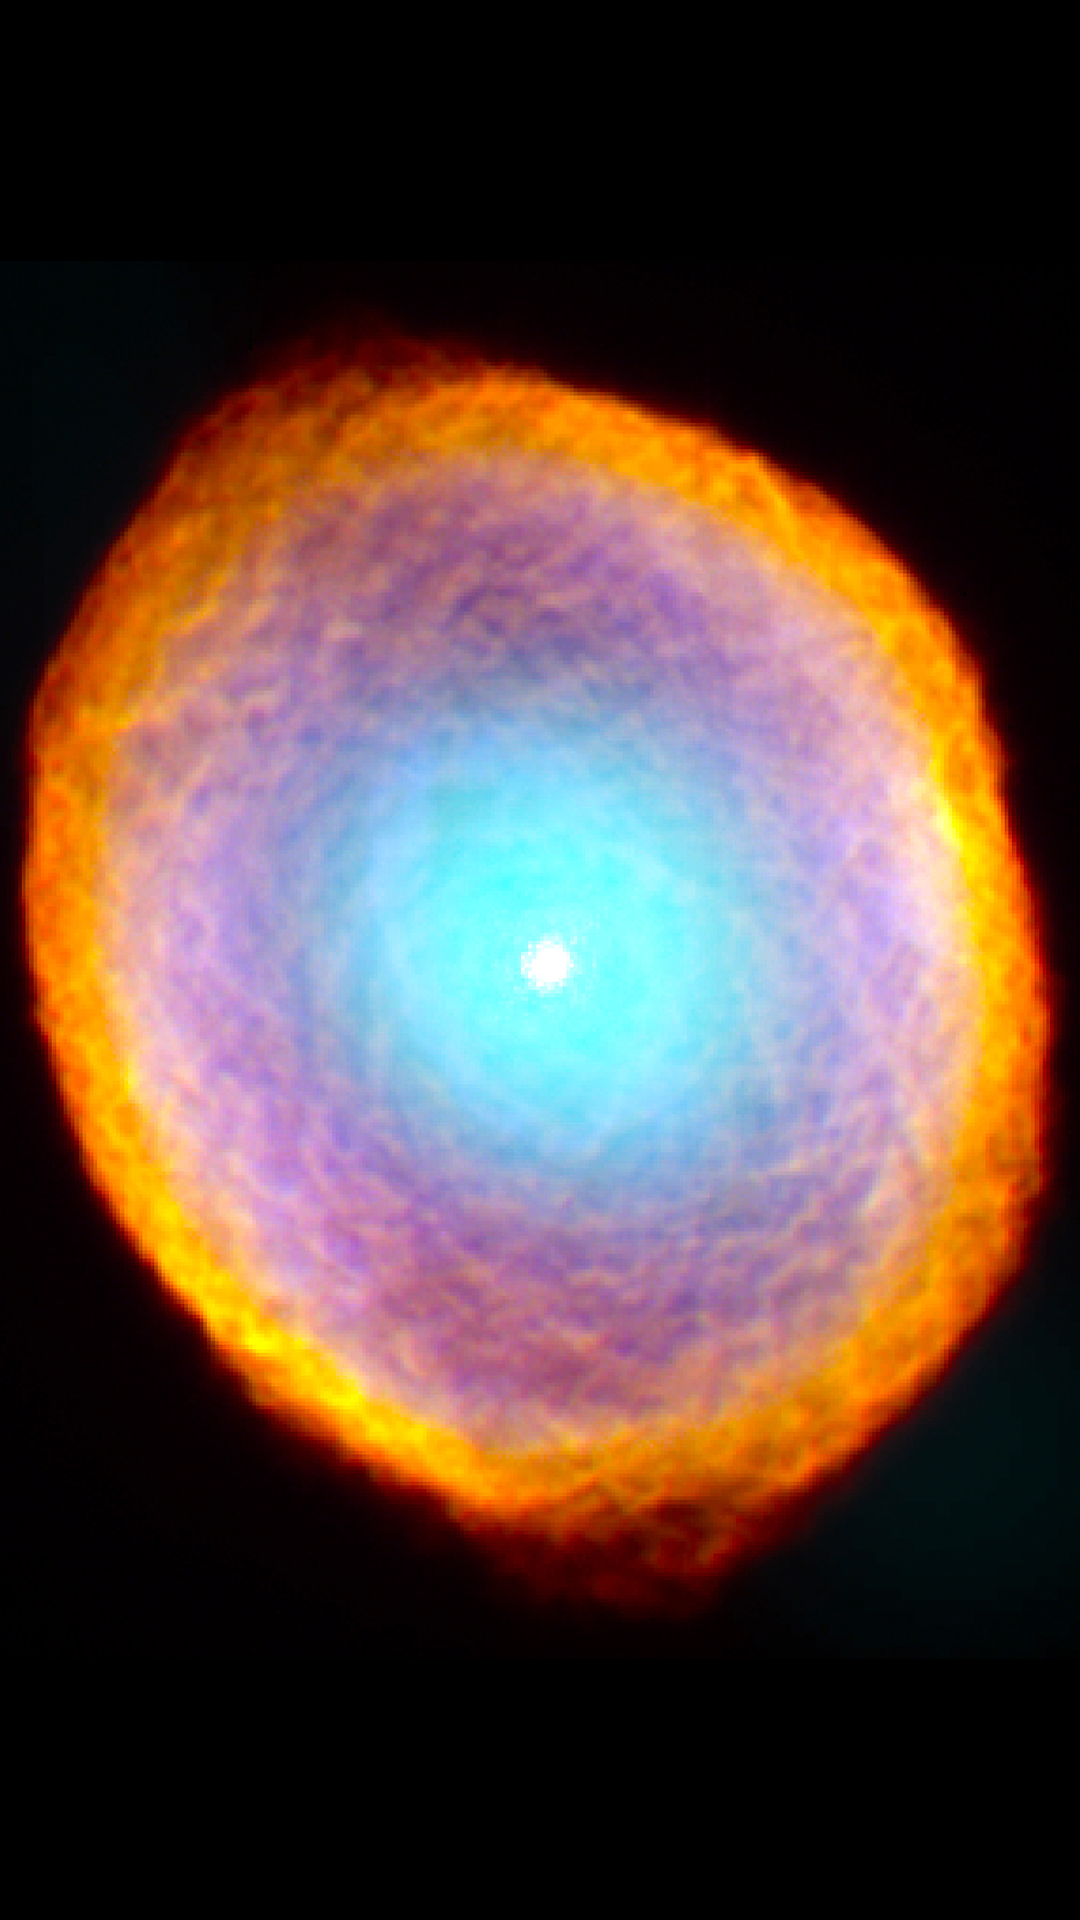 IC 418 / Spirograph Nebula